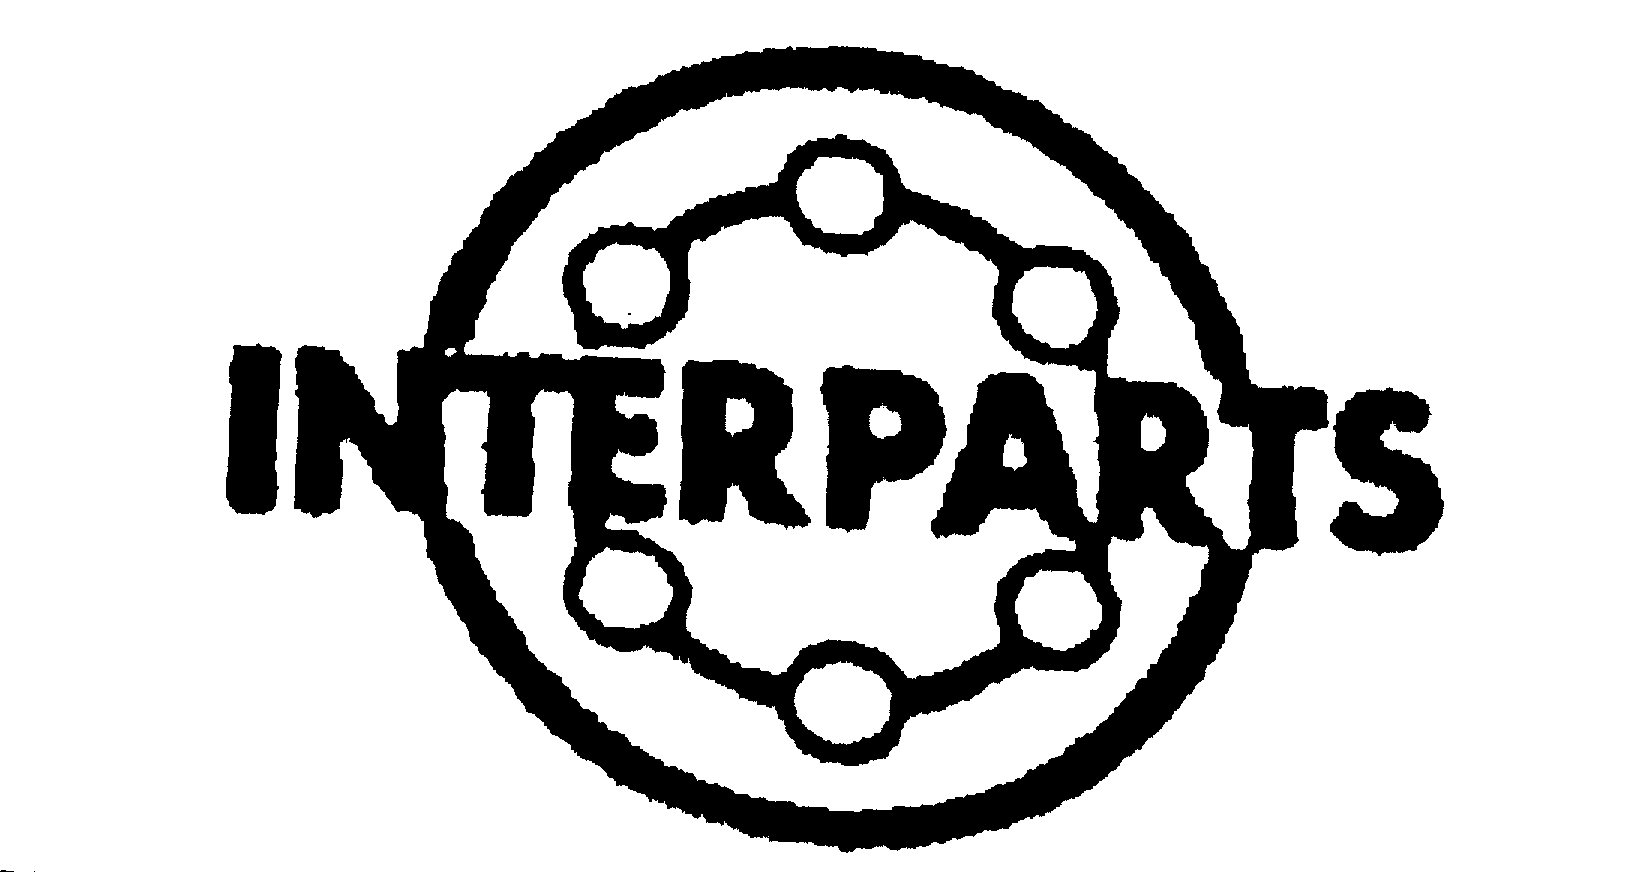 Trademark Logo INTERPARTS